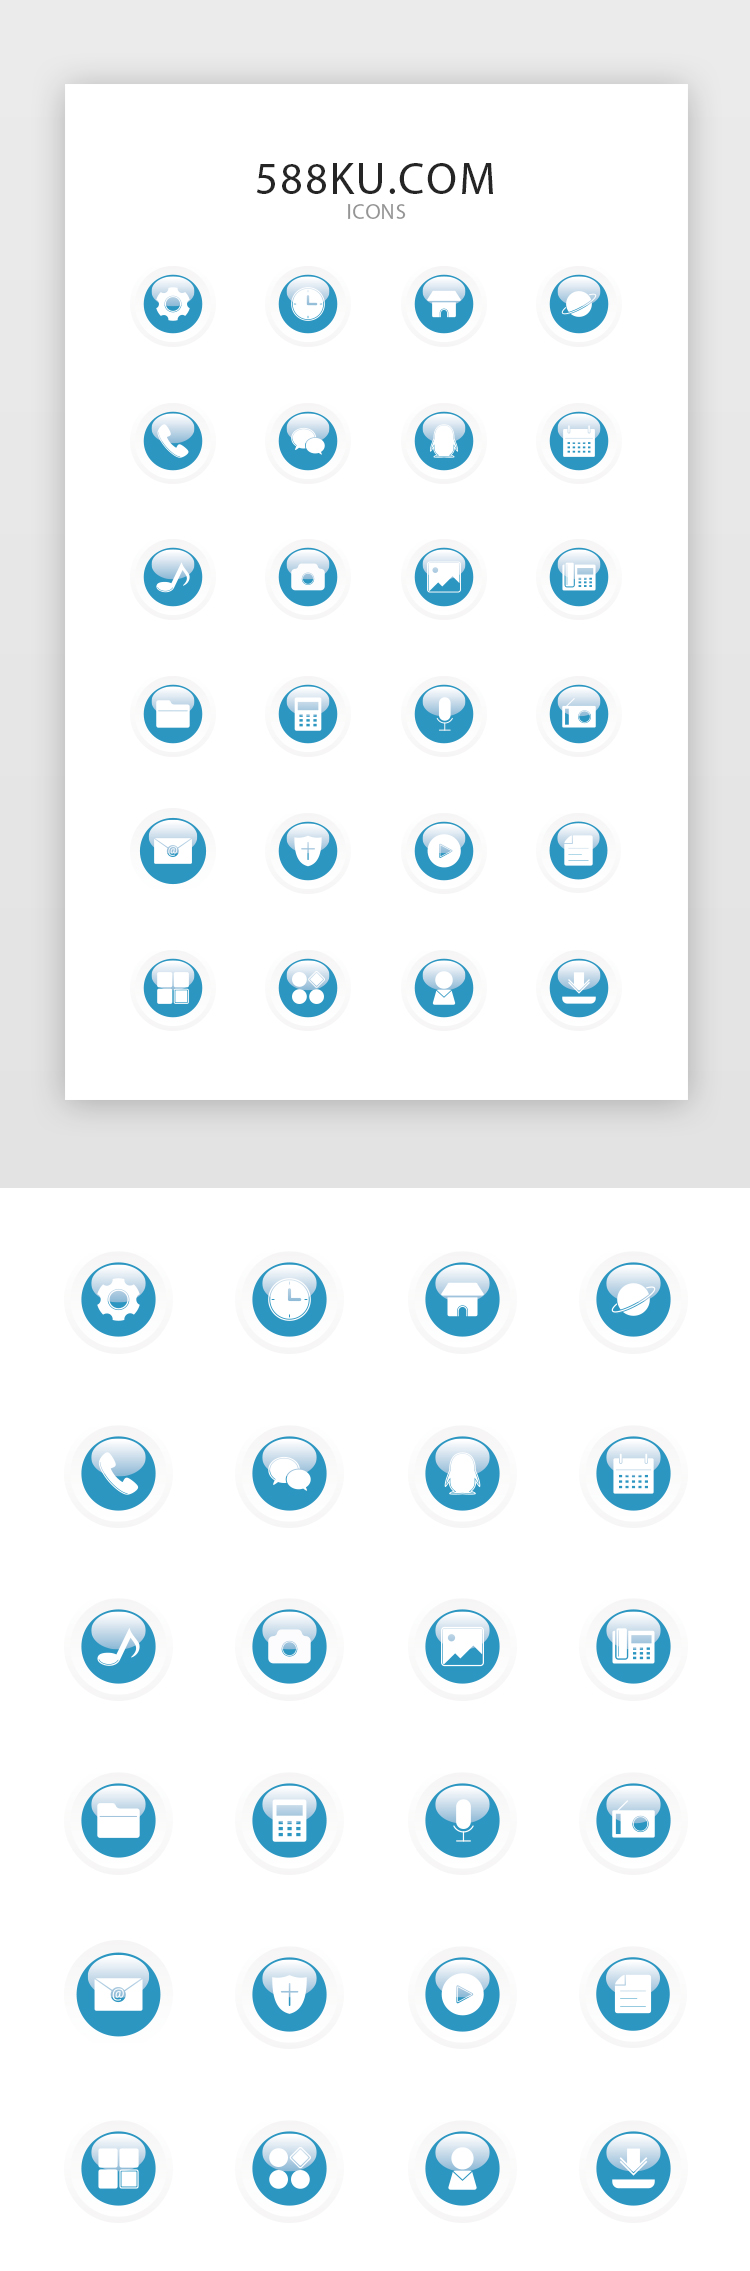 蓝色圆形立体球按钮app手机桌面主题图标图片